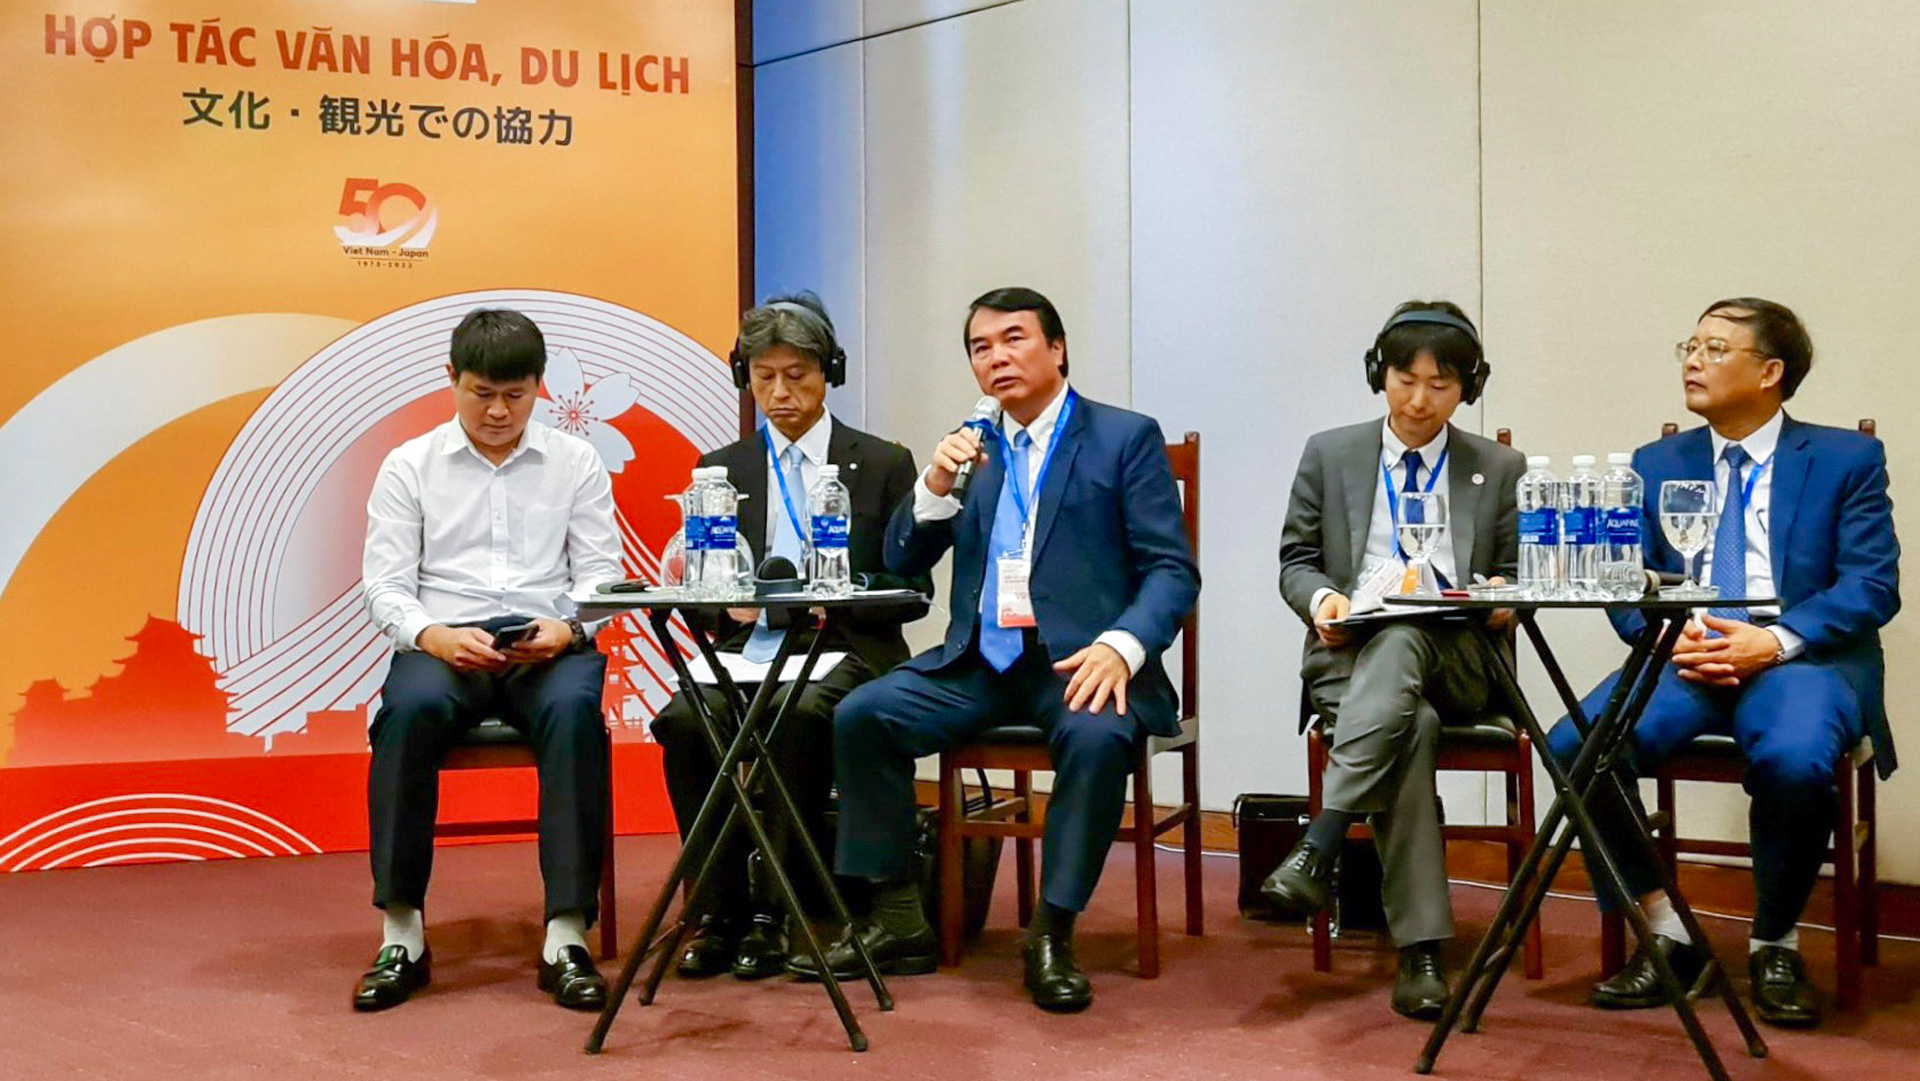 Phó Chủ tịch UBND tỉnh Lâm Đồng Phạm S phát biểu trong phiên họp chuyên đề Hợp tác về Văn hoá - Du lịch